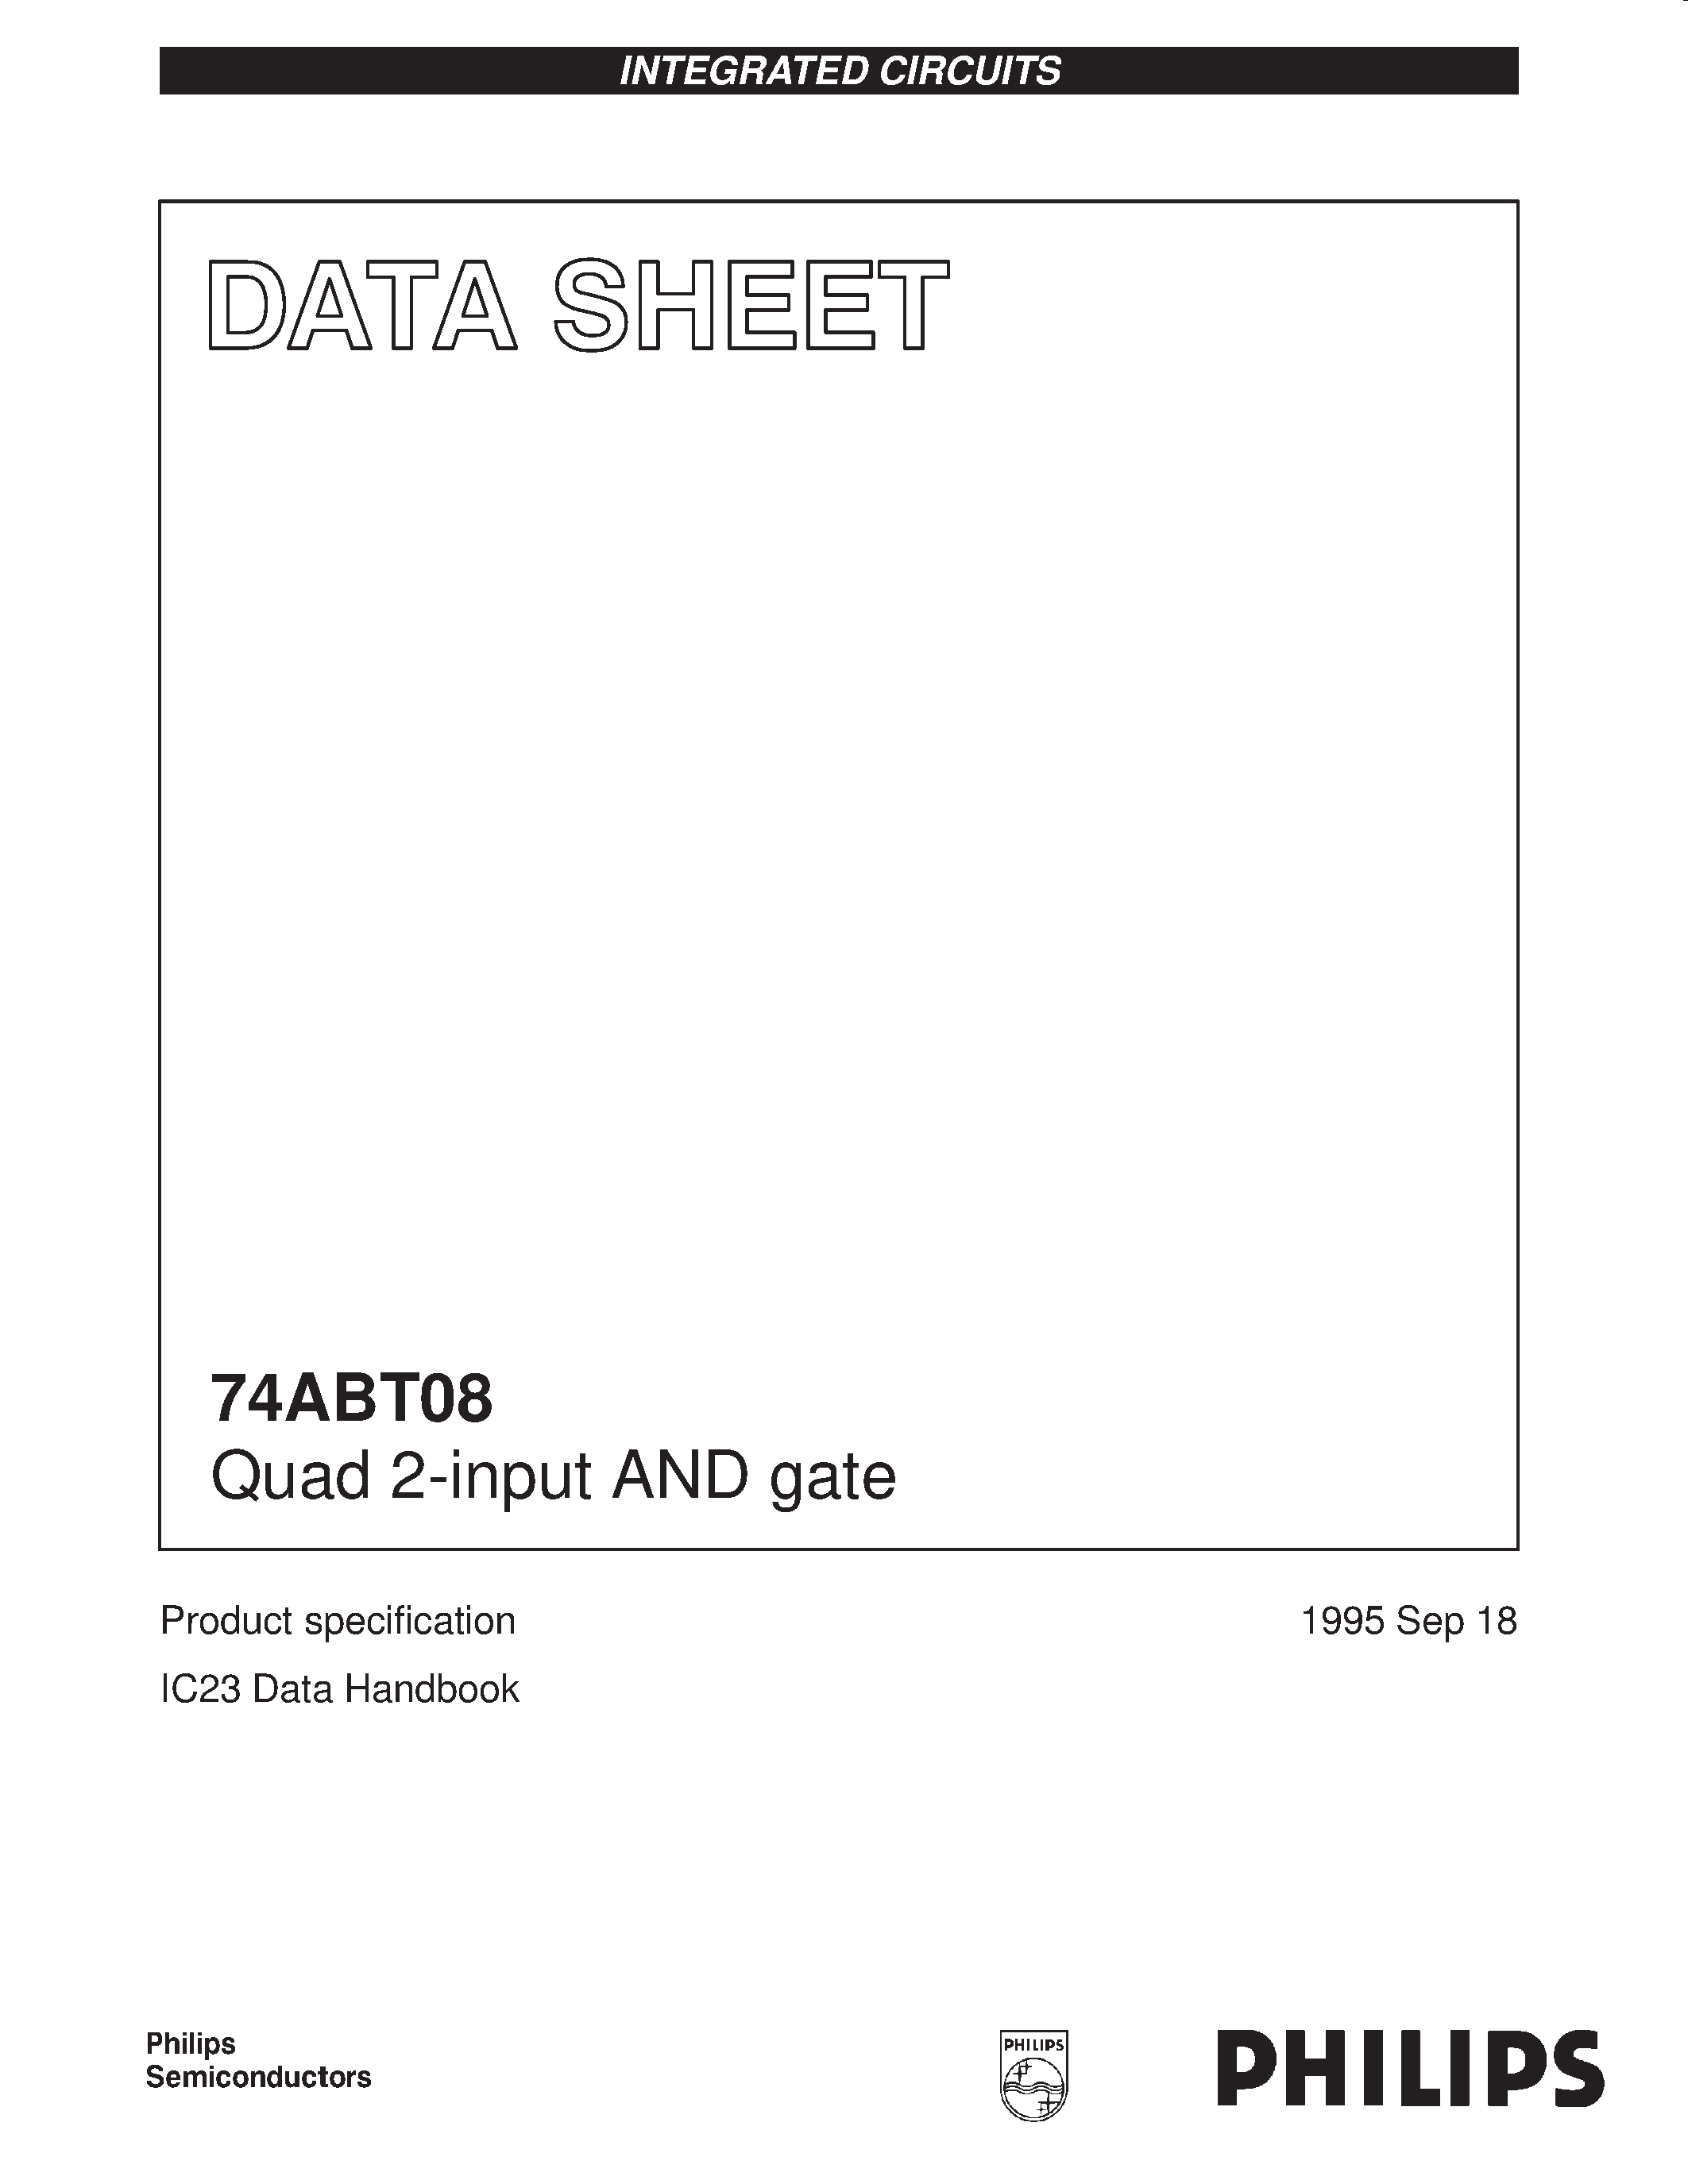 Даташит 74ABT08 - Quad 2-input AND gate страница 1